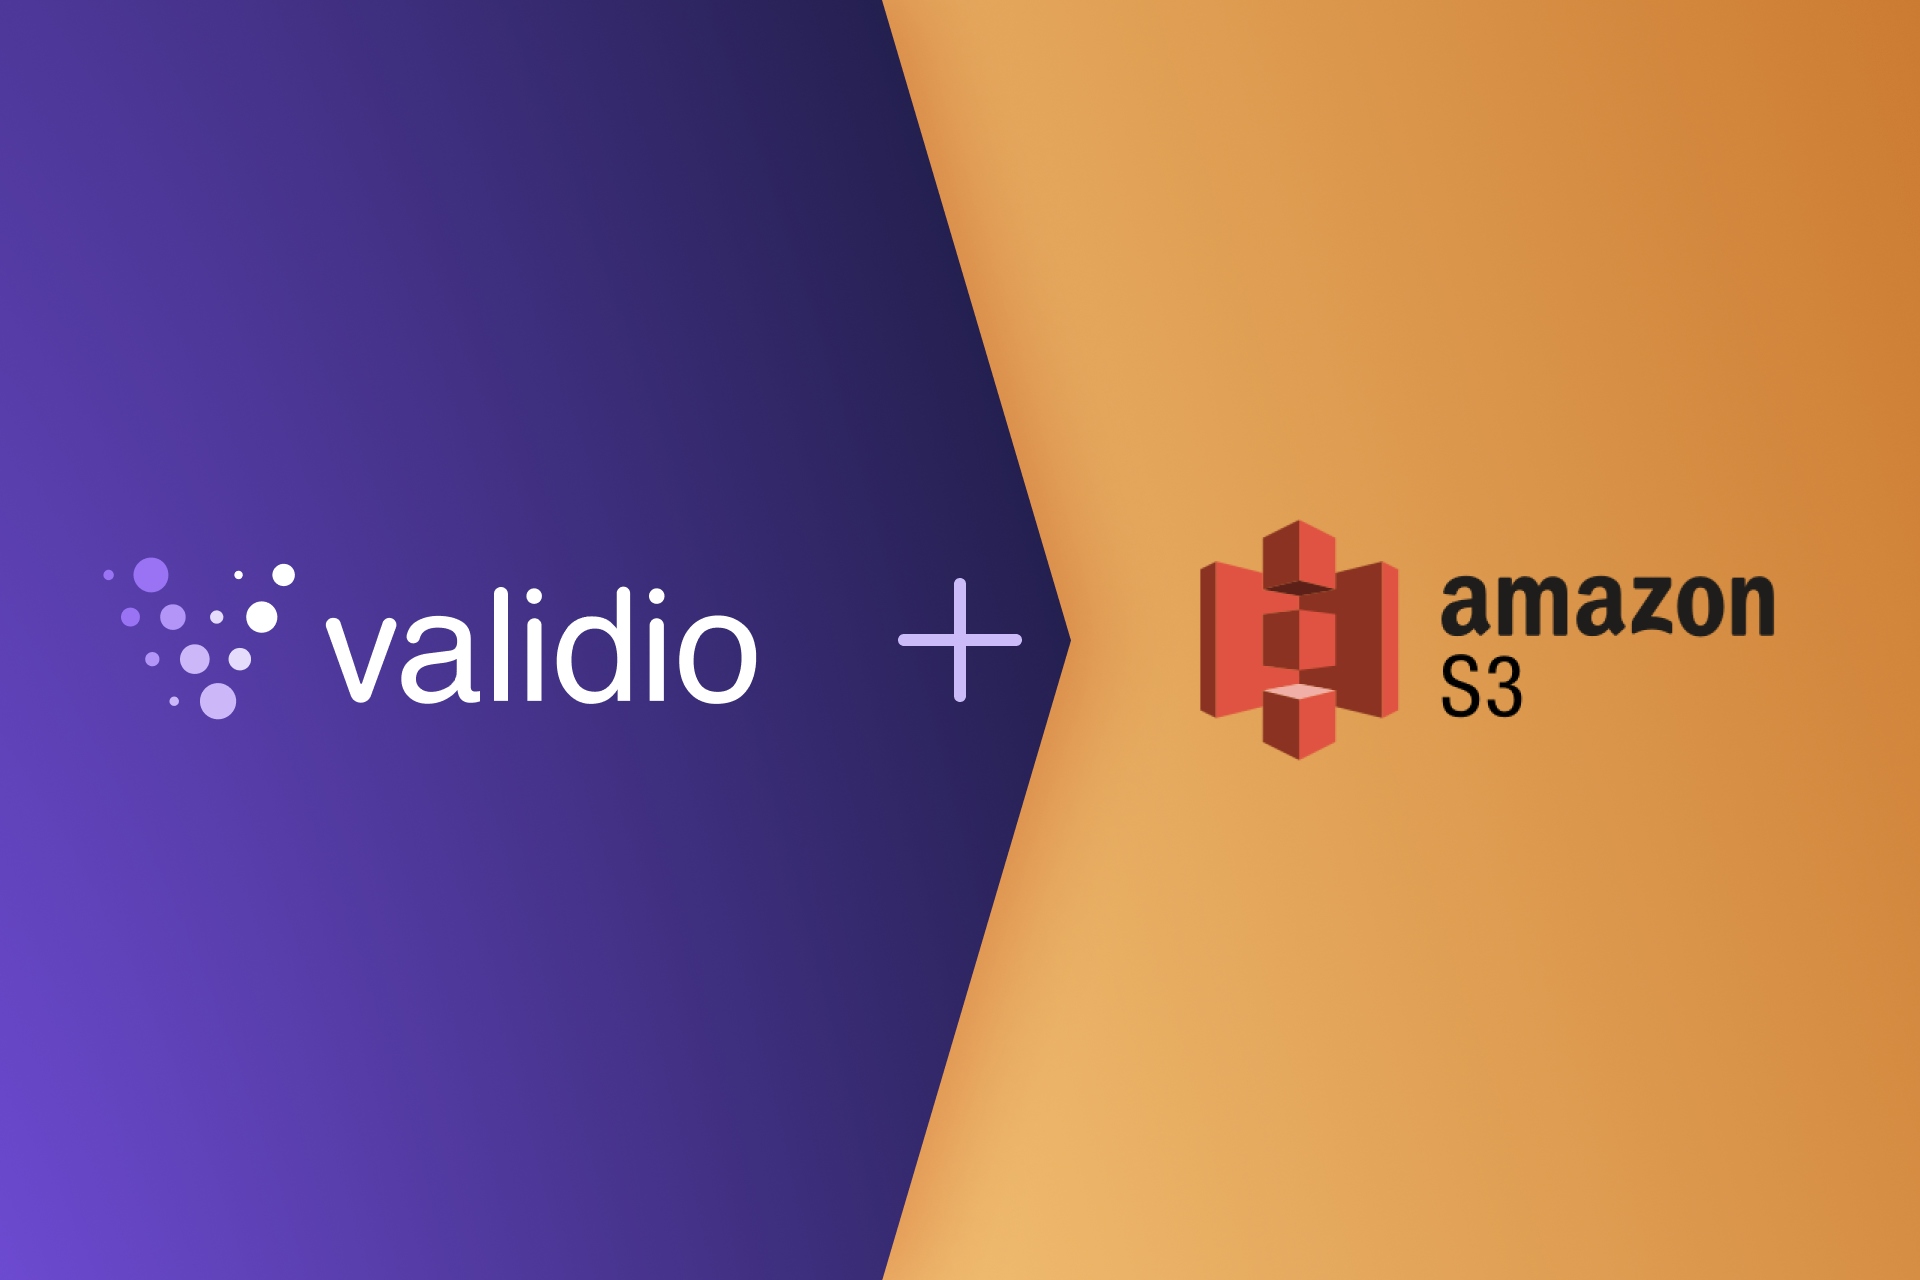 Validio+Amazon S3